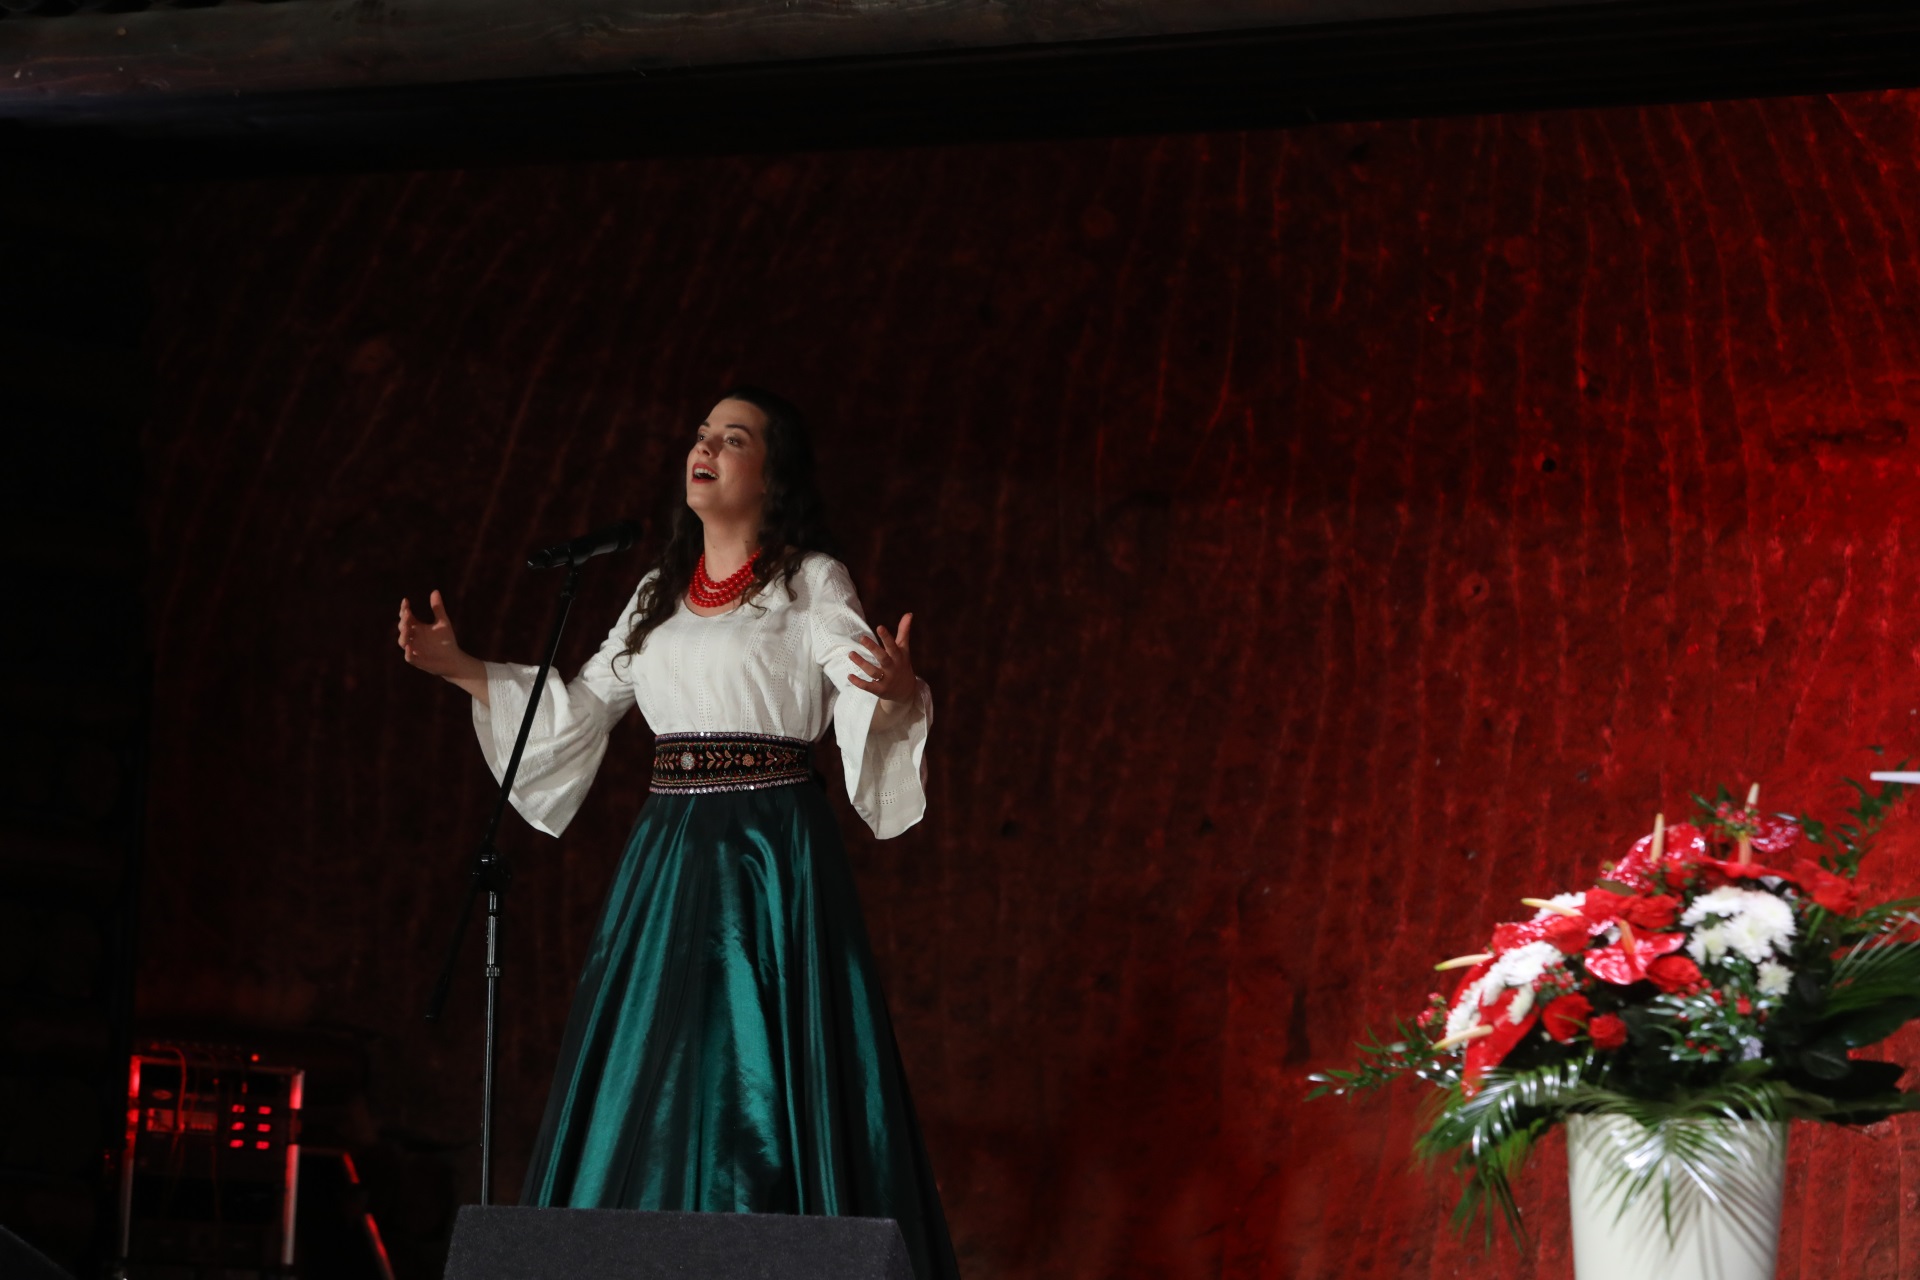 Sopranistka Wioletta Liber podczas solowego występu. Śpiewaczka jest ubrana w długą zieloną spódnicę, białą bluzkę. Ma na sobie ozdobny pas oraz czerwone korale